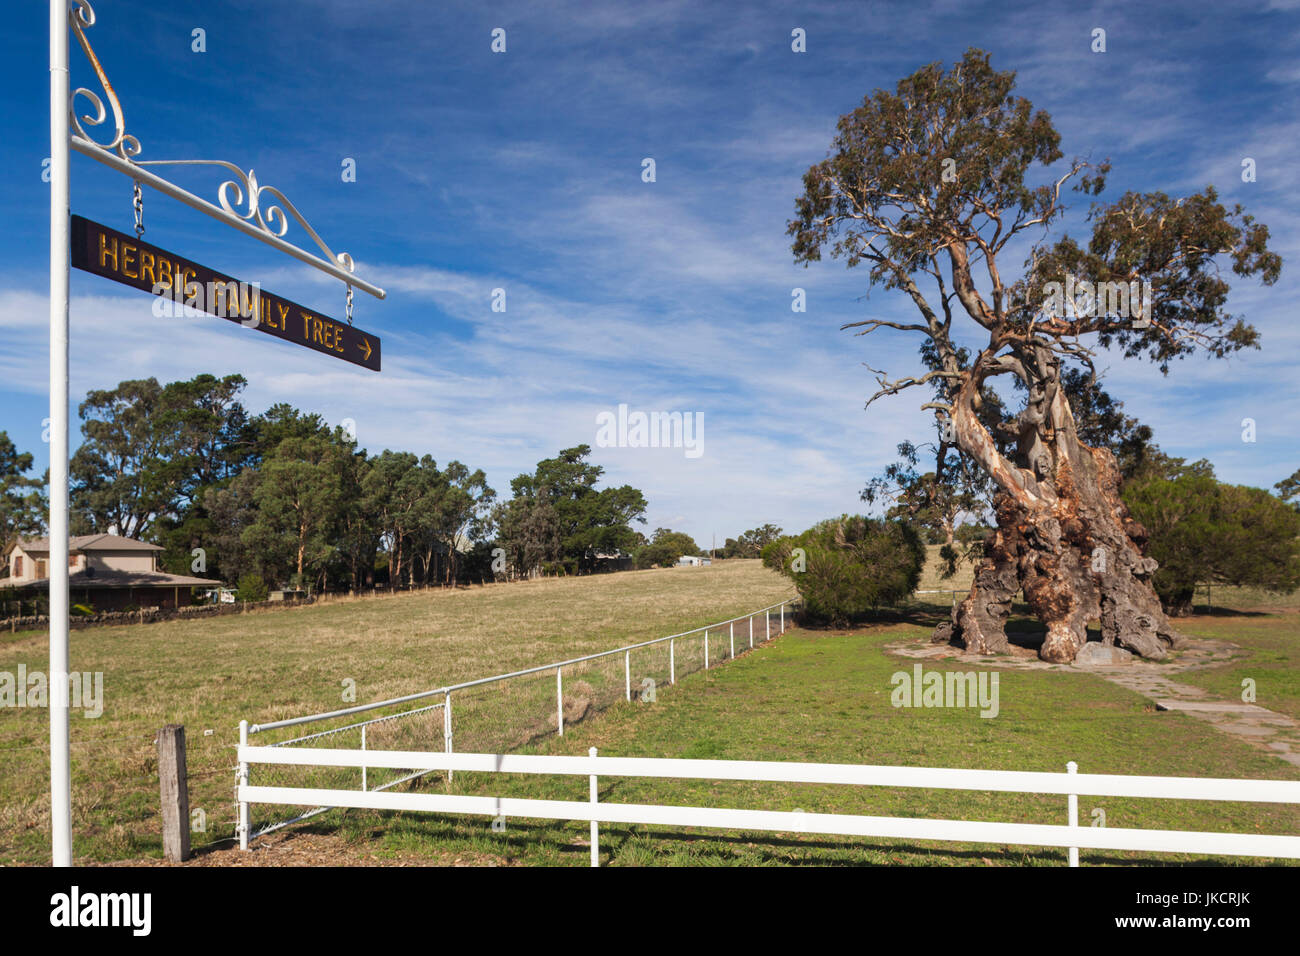 L'Australie, l'Australie, Barossa Valley, l'arbre Springton, Herbig, première maison d'immigrant allemand Friedrich Herbig, symbole de début de l'immigration de l'Australie du Sud Banque D'Images